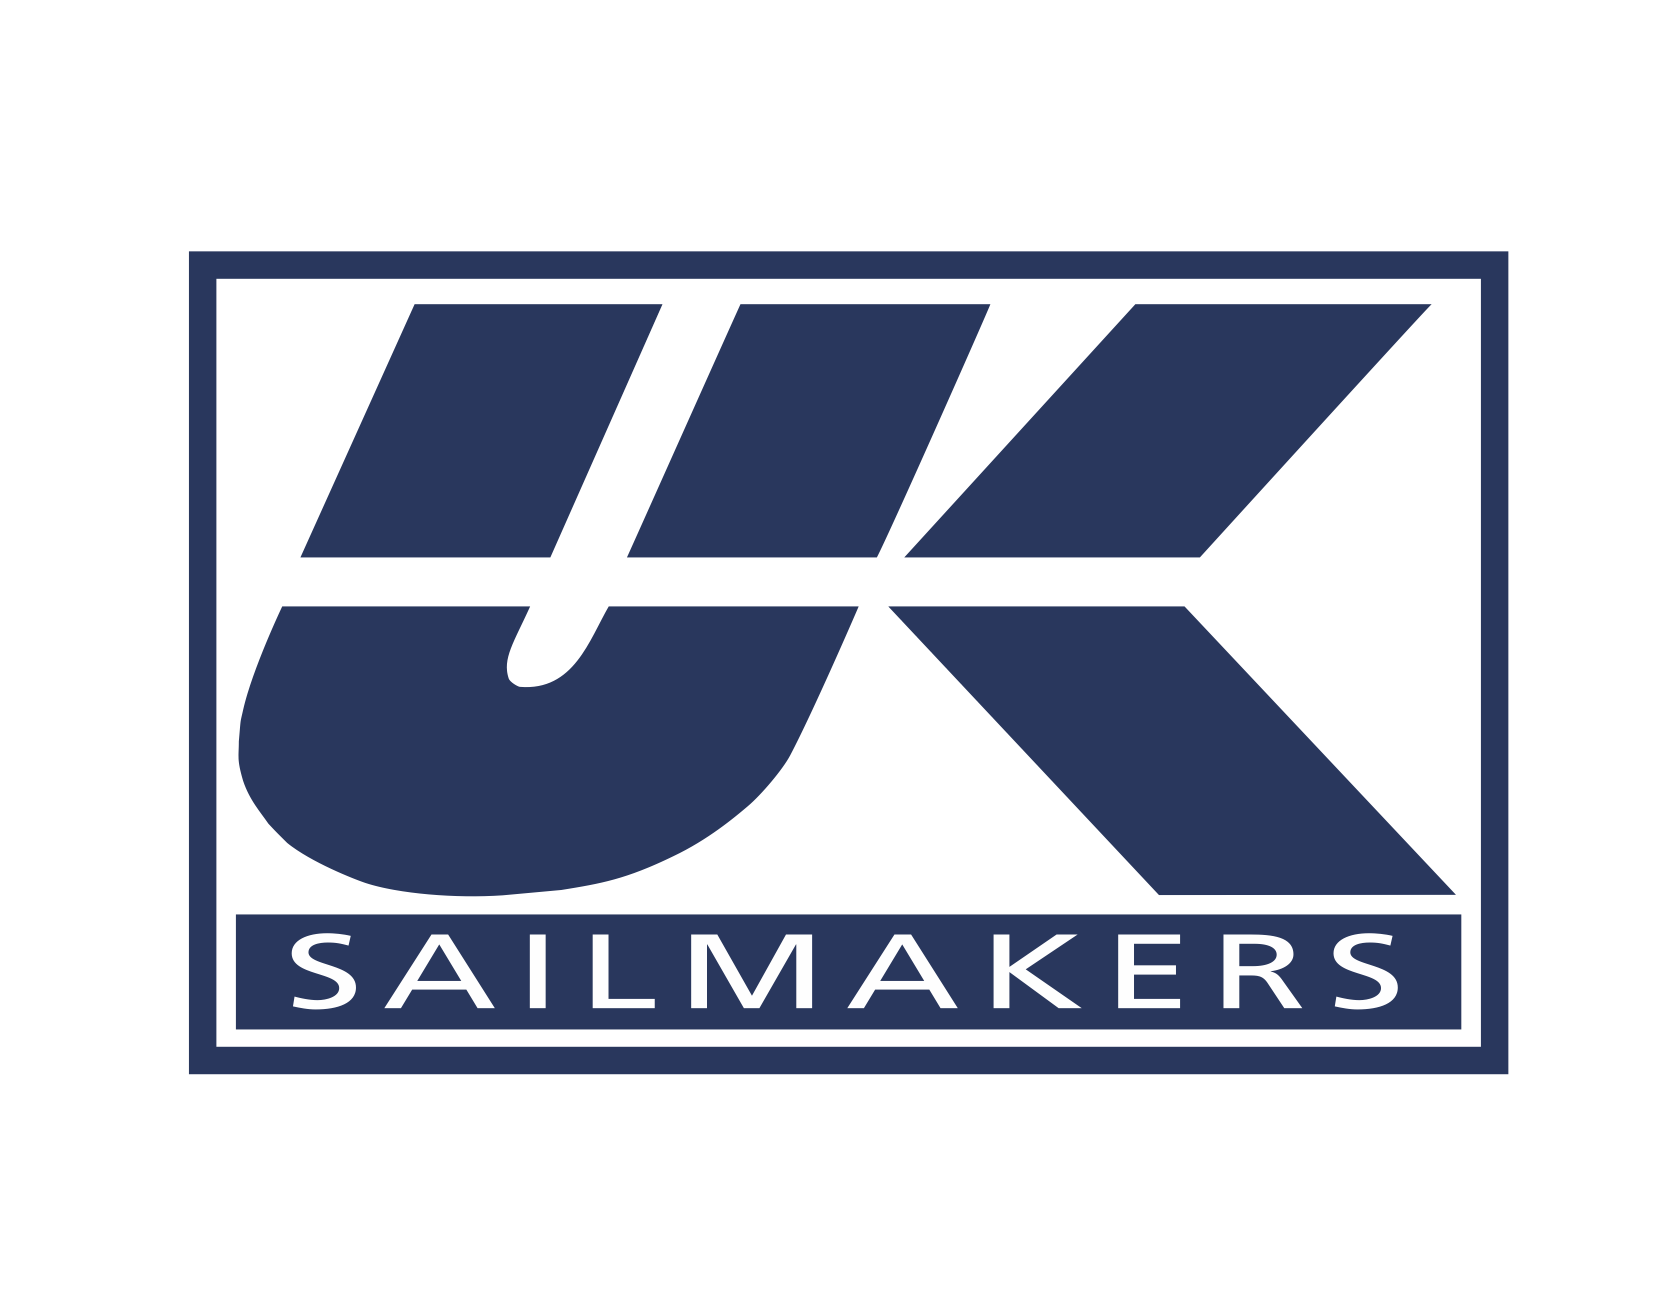 UK Sails